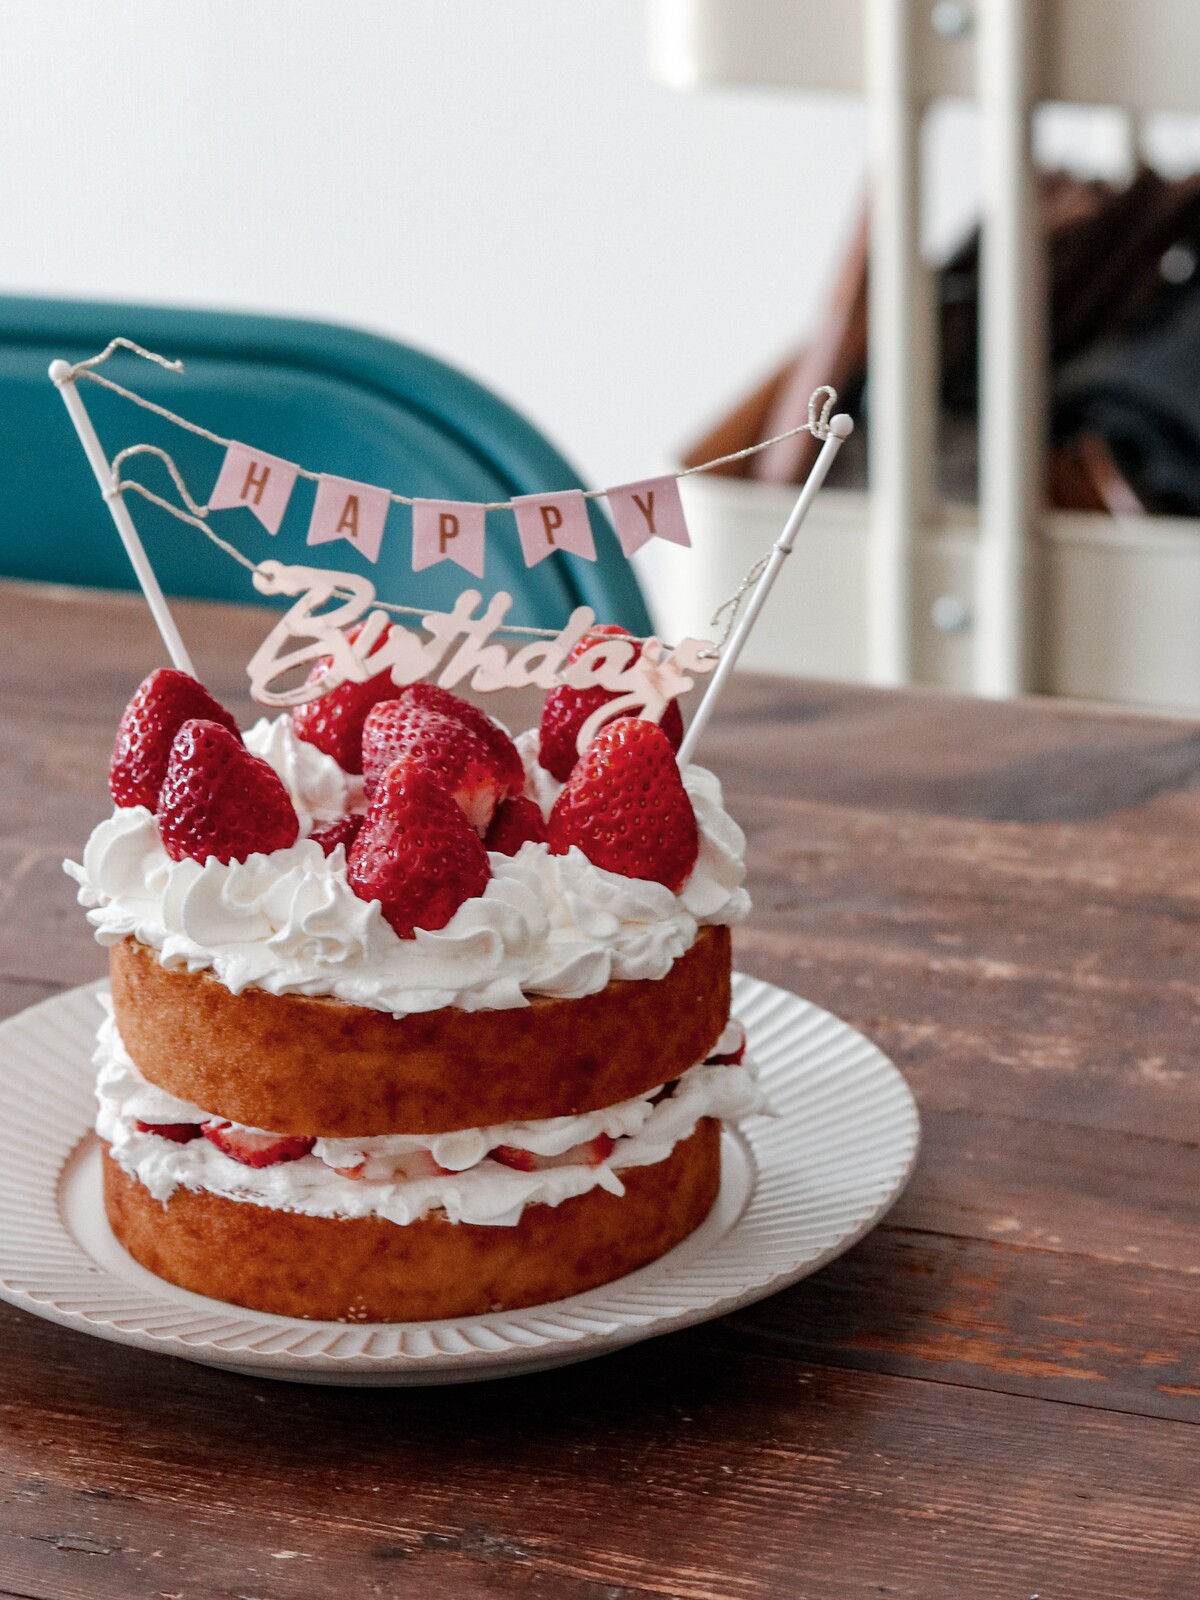 誕生日ケーキは娘のアイディアで無印の新商品で手抜きバンザイケーキの完成 5歳になりました あいのおうちごはん Powered By ライブドアブログ